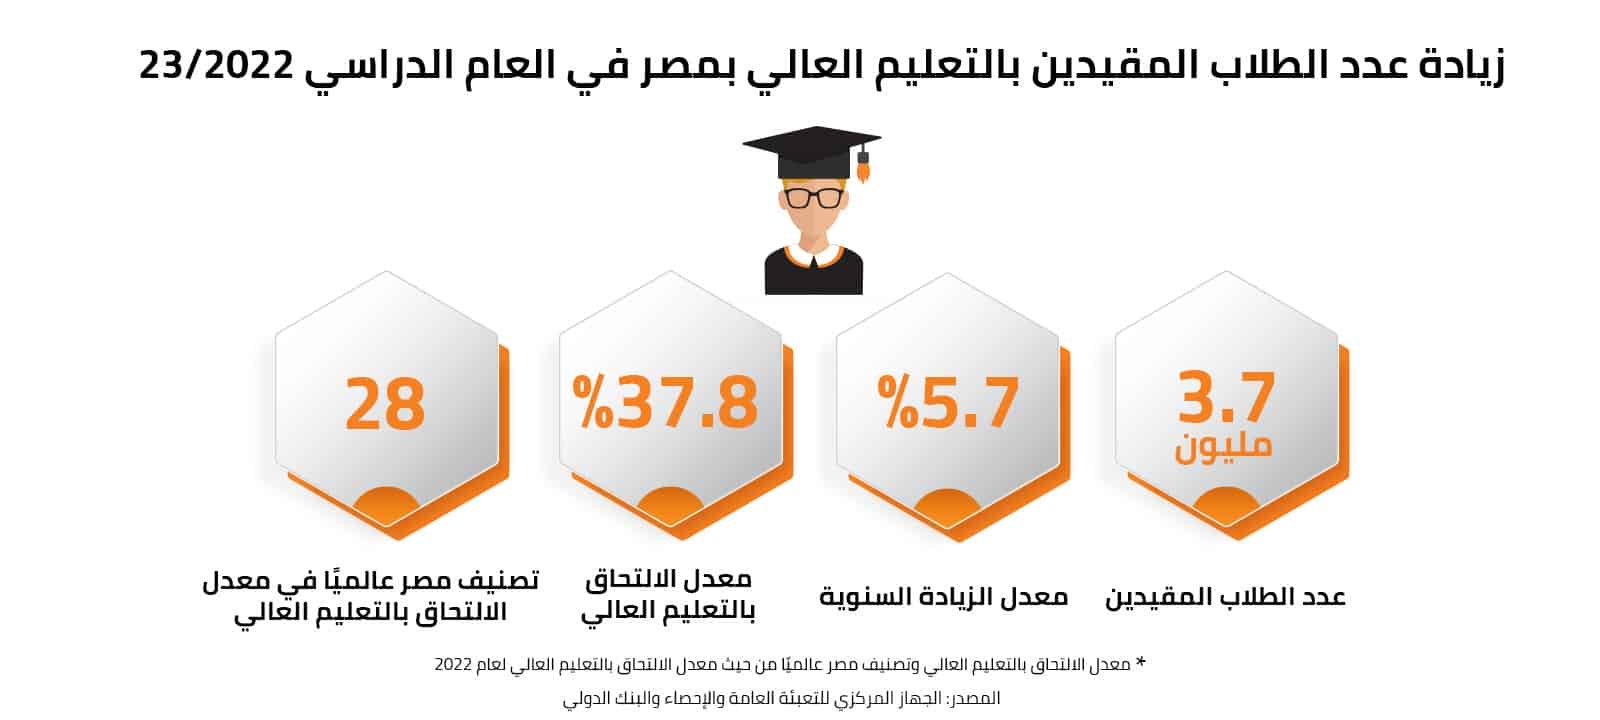 زيادة عدد الطلاب المقيدين بالتعليم العالي بمصر في العام الدراسي 2022/23 